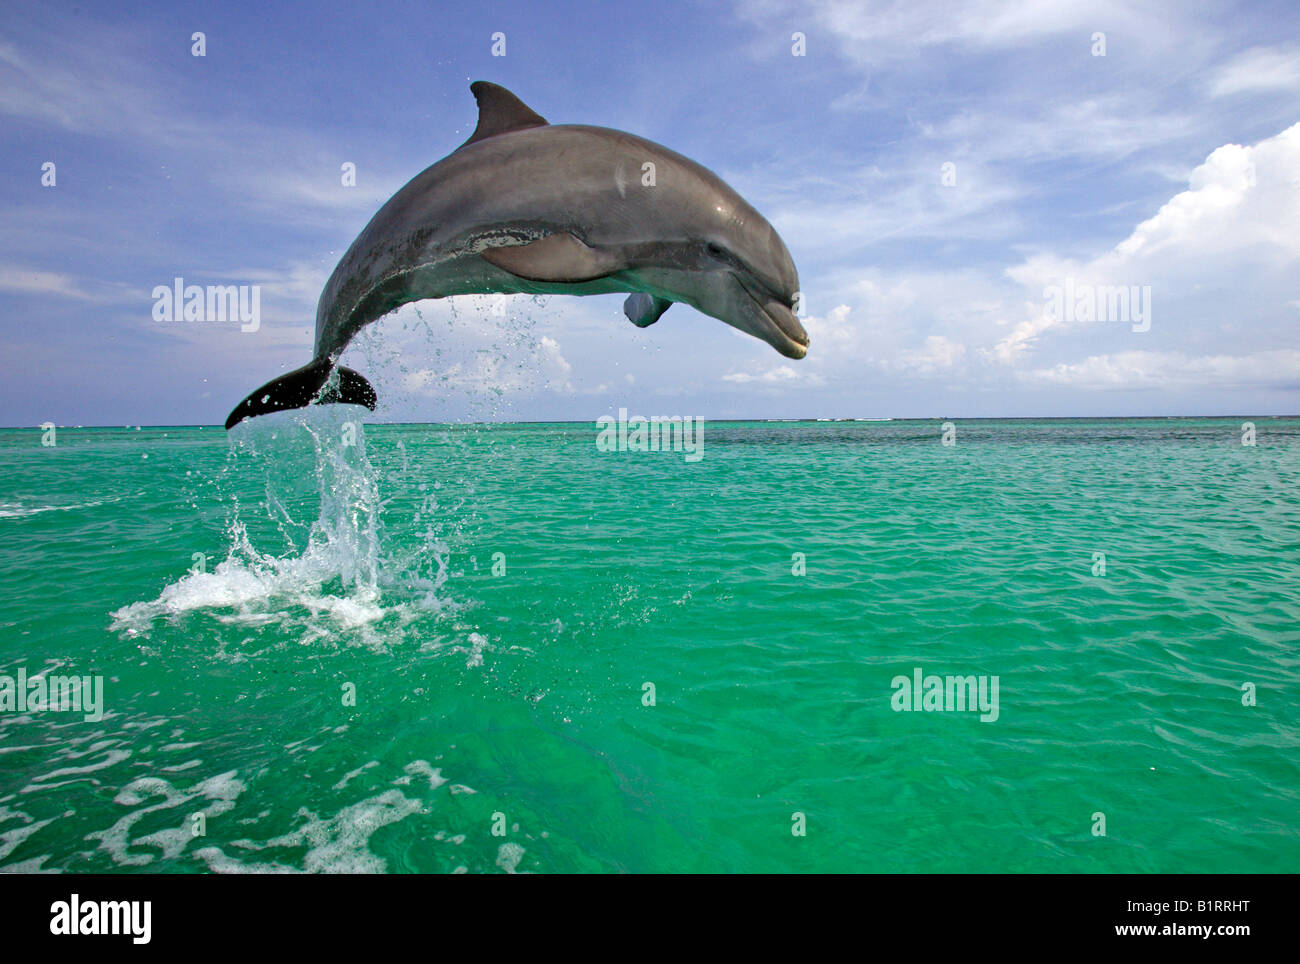 El delfín mular (Tursiops truncatus) saltando fuera del agua, el Caribe, Roatán, Honduras, América Central Foto de stock